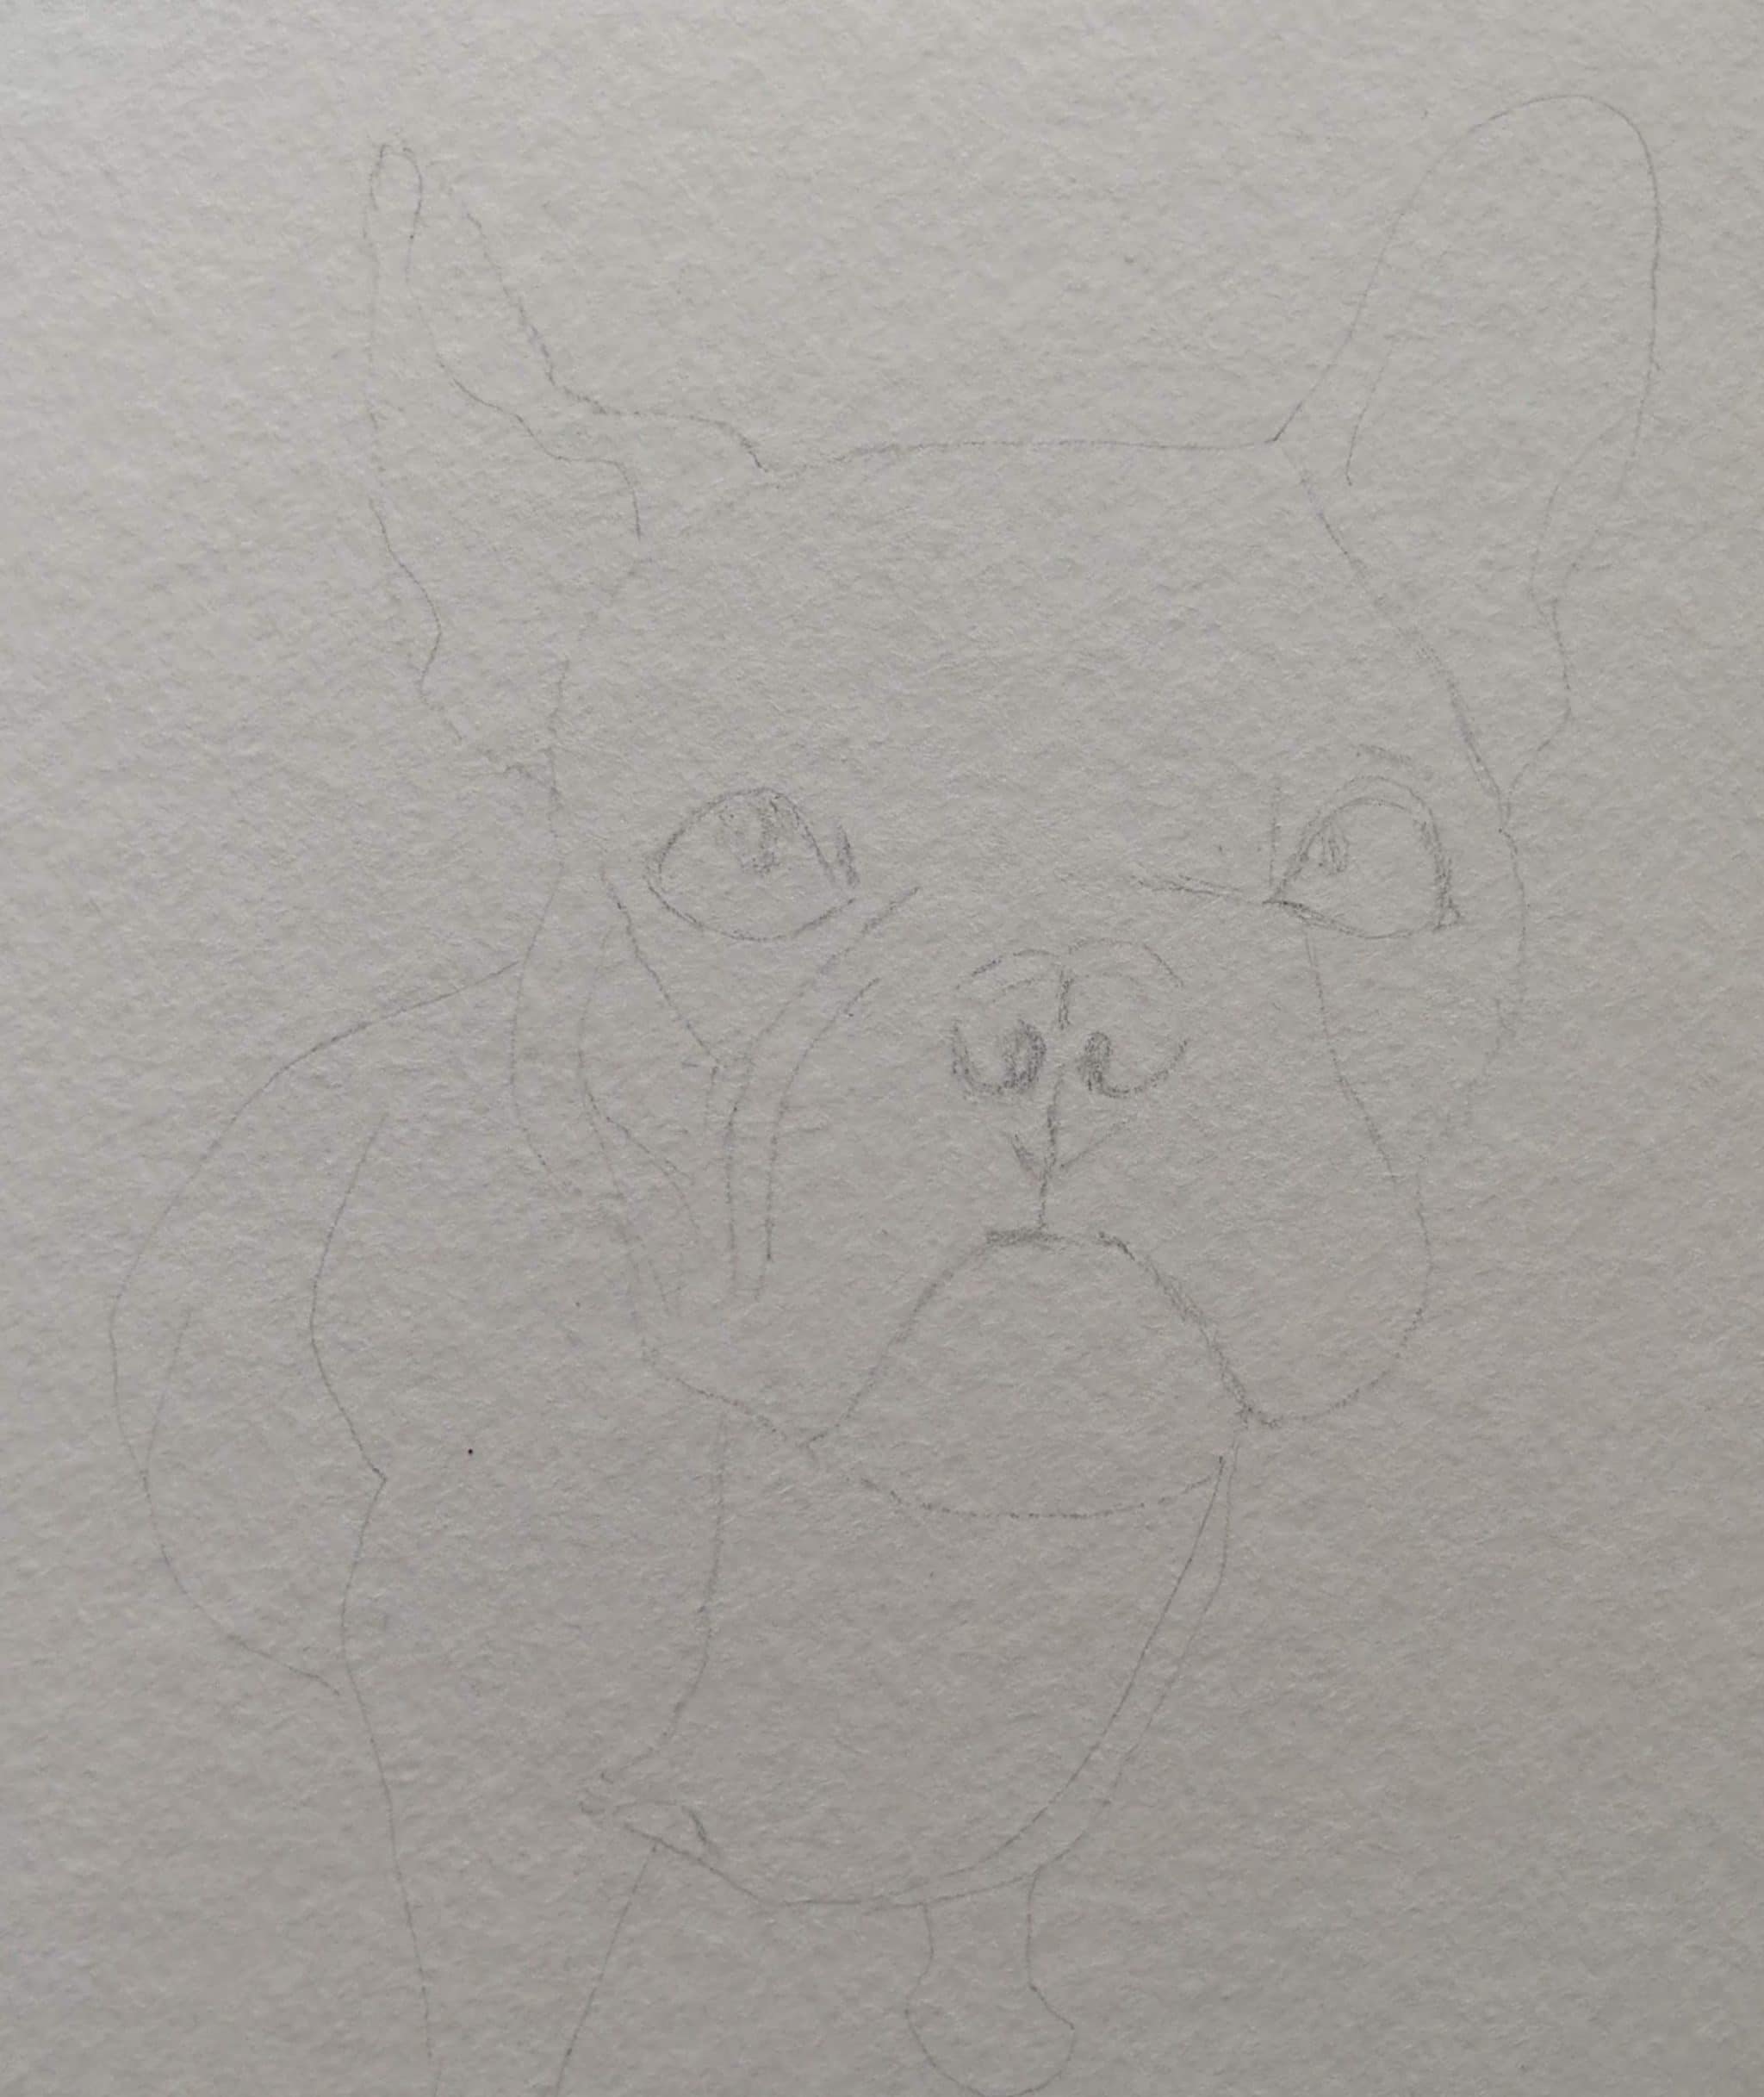 Croquis portrait chien bouledogue dessin